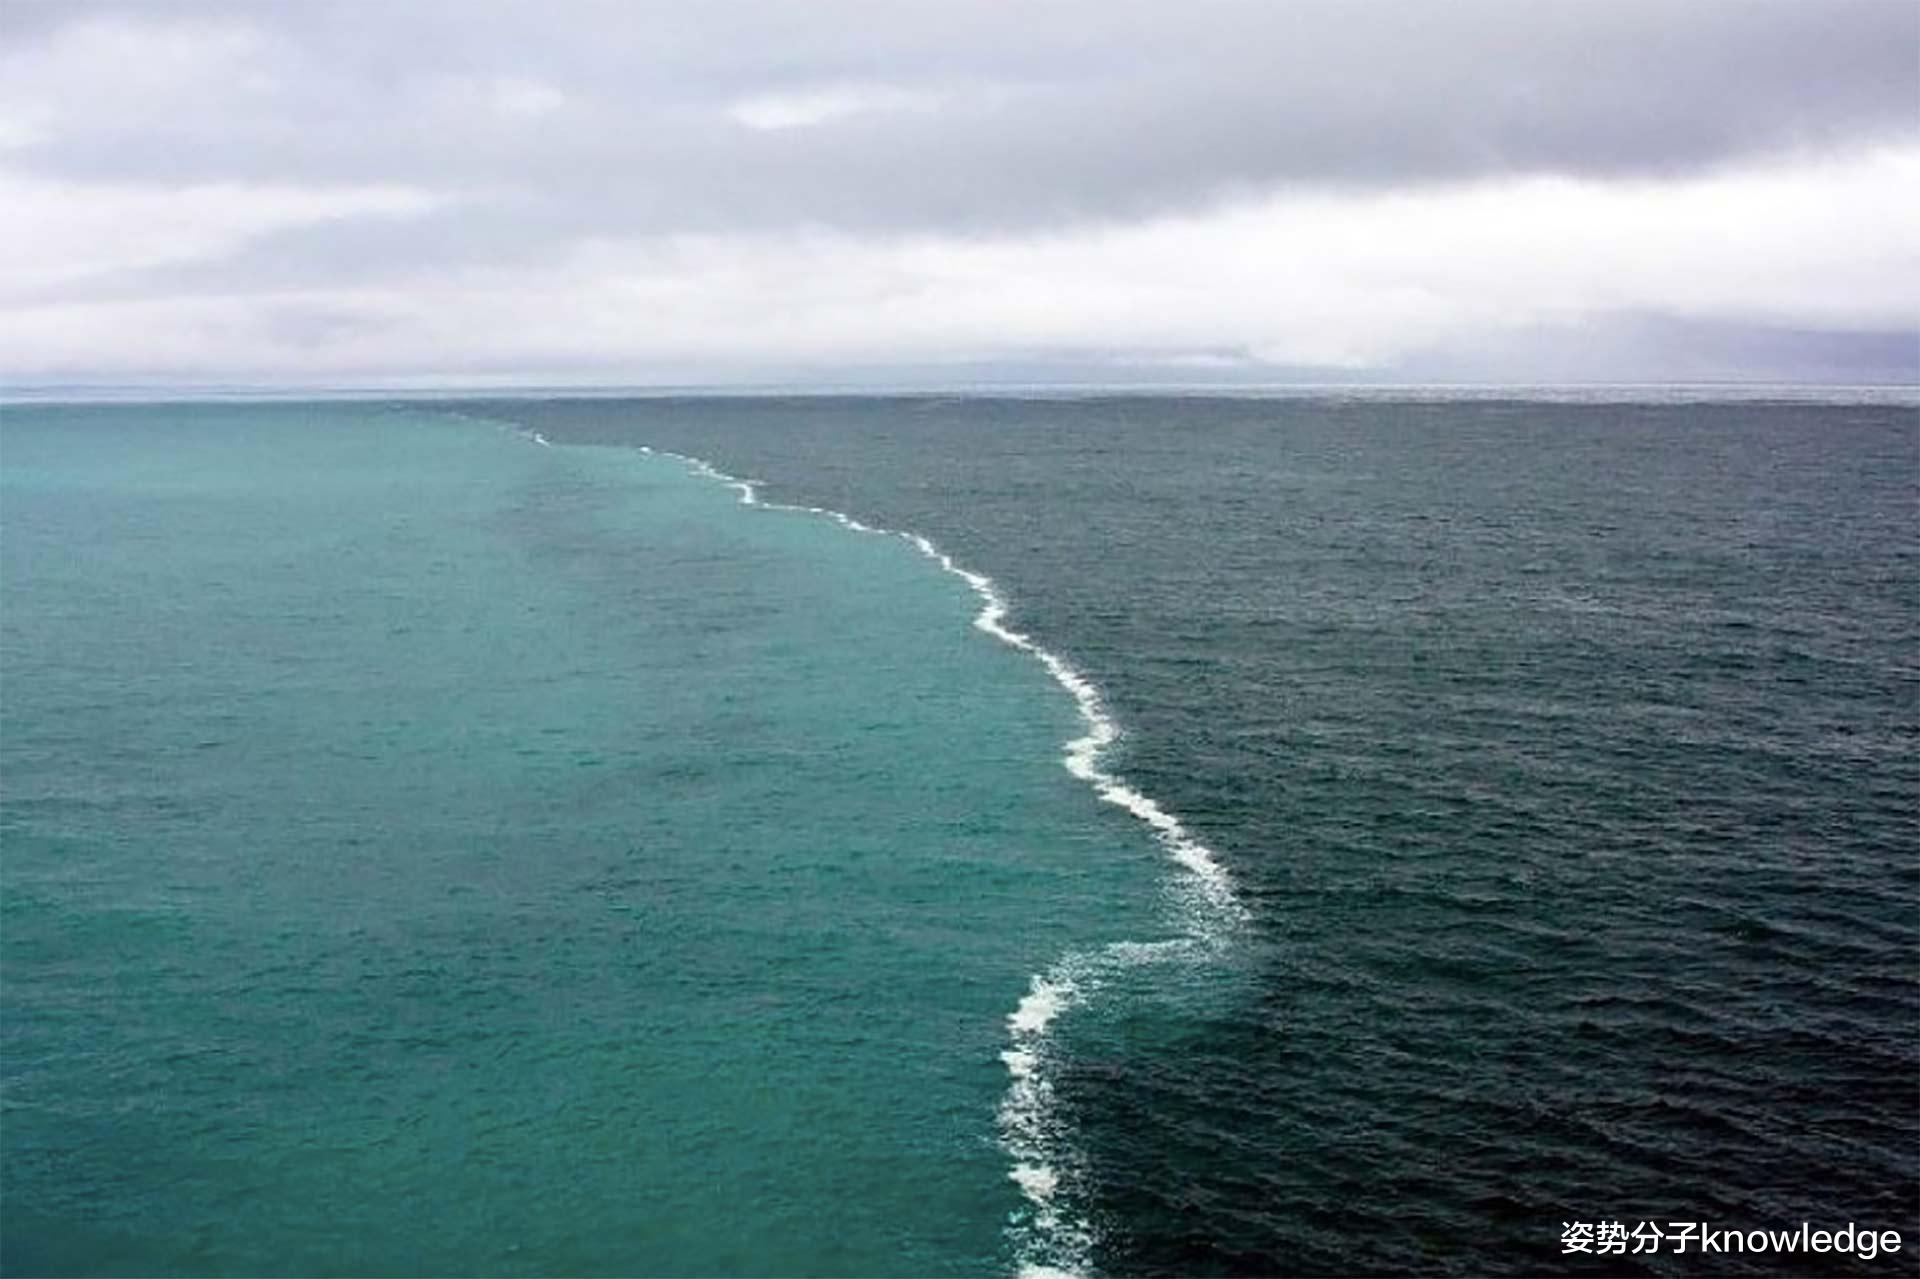 大西洋和太平洋的神奇分界线，两侧海水泾渭分明，难道是刻意安排